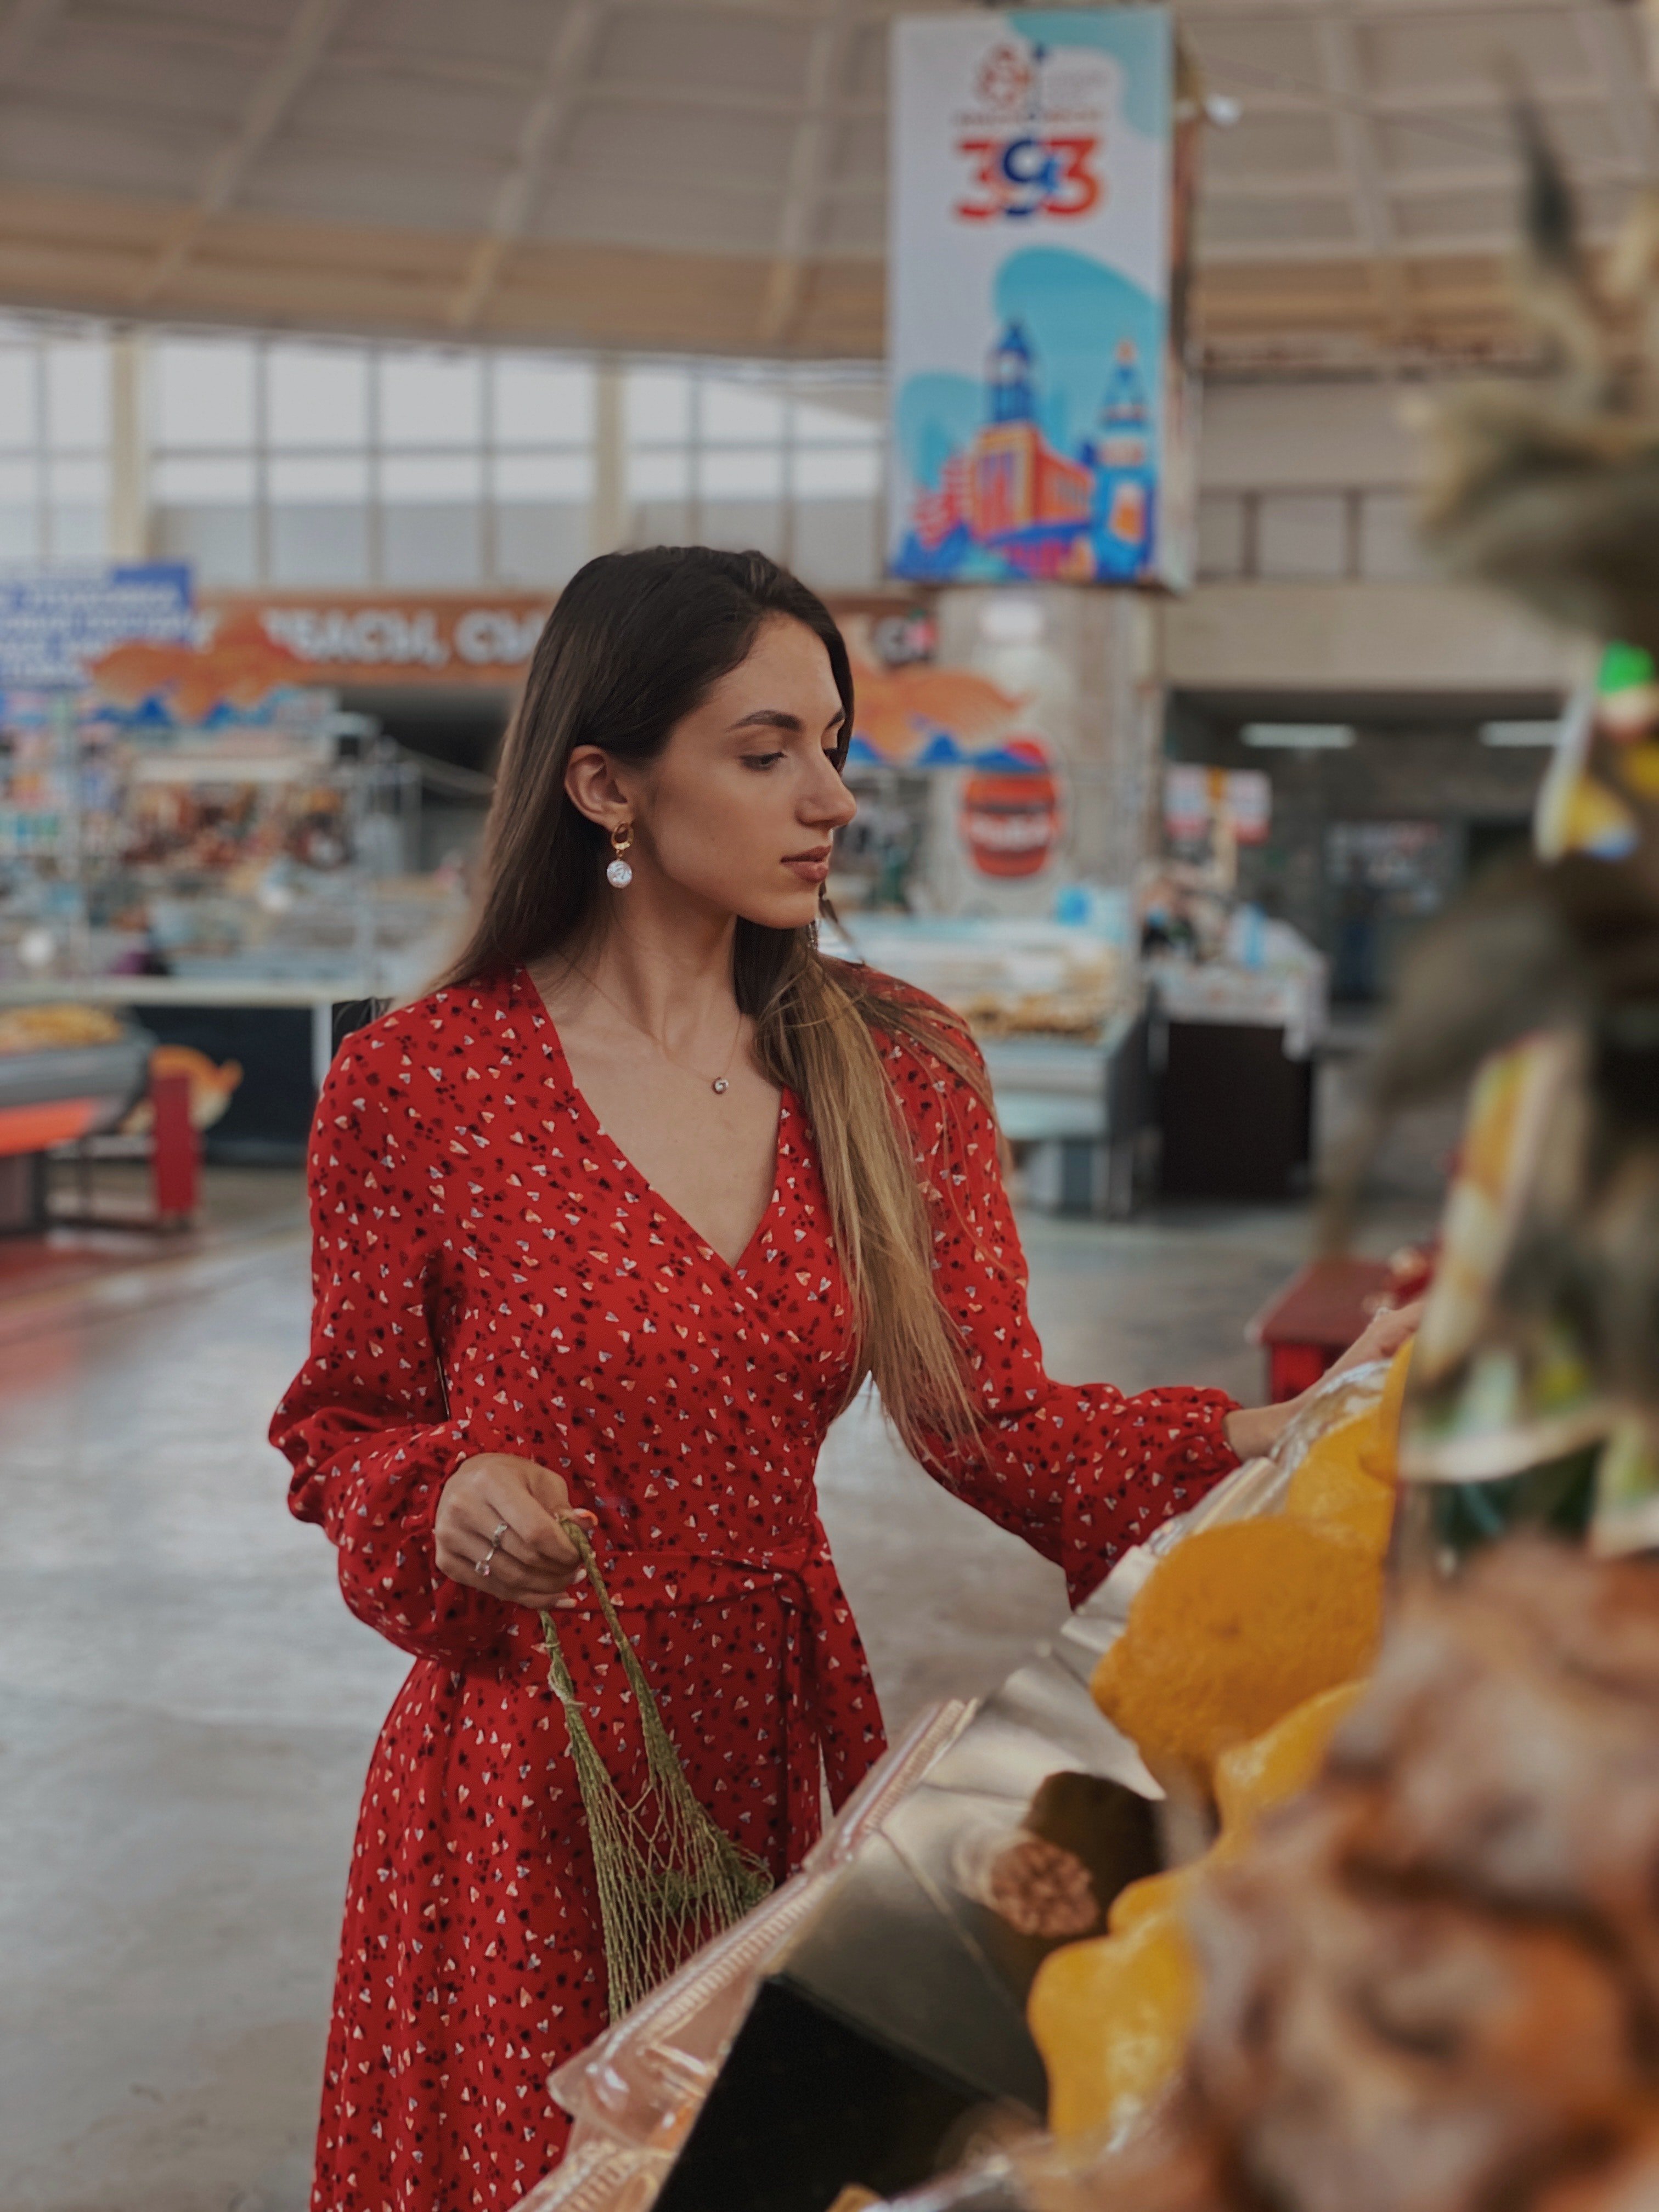 Maria hat sich im Supermarkt ein paar Snacks geholt, weil sie hungrig war. | Quelle: Pexels